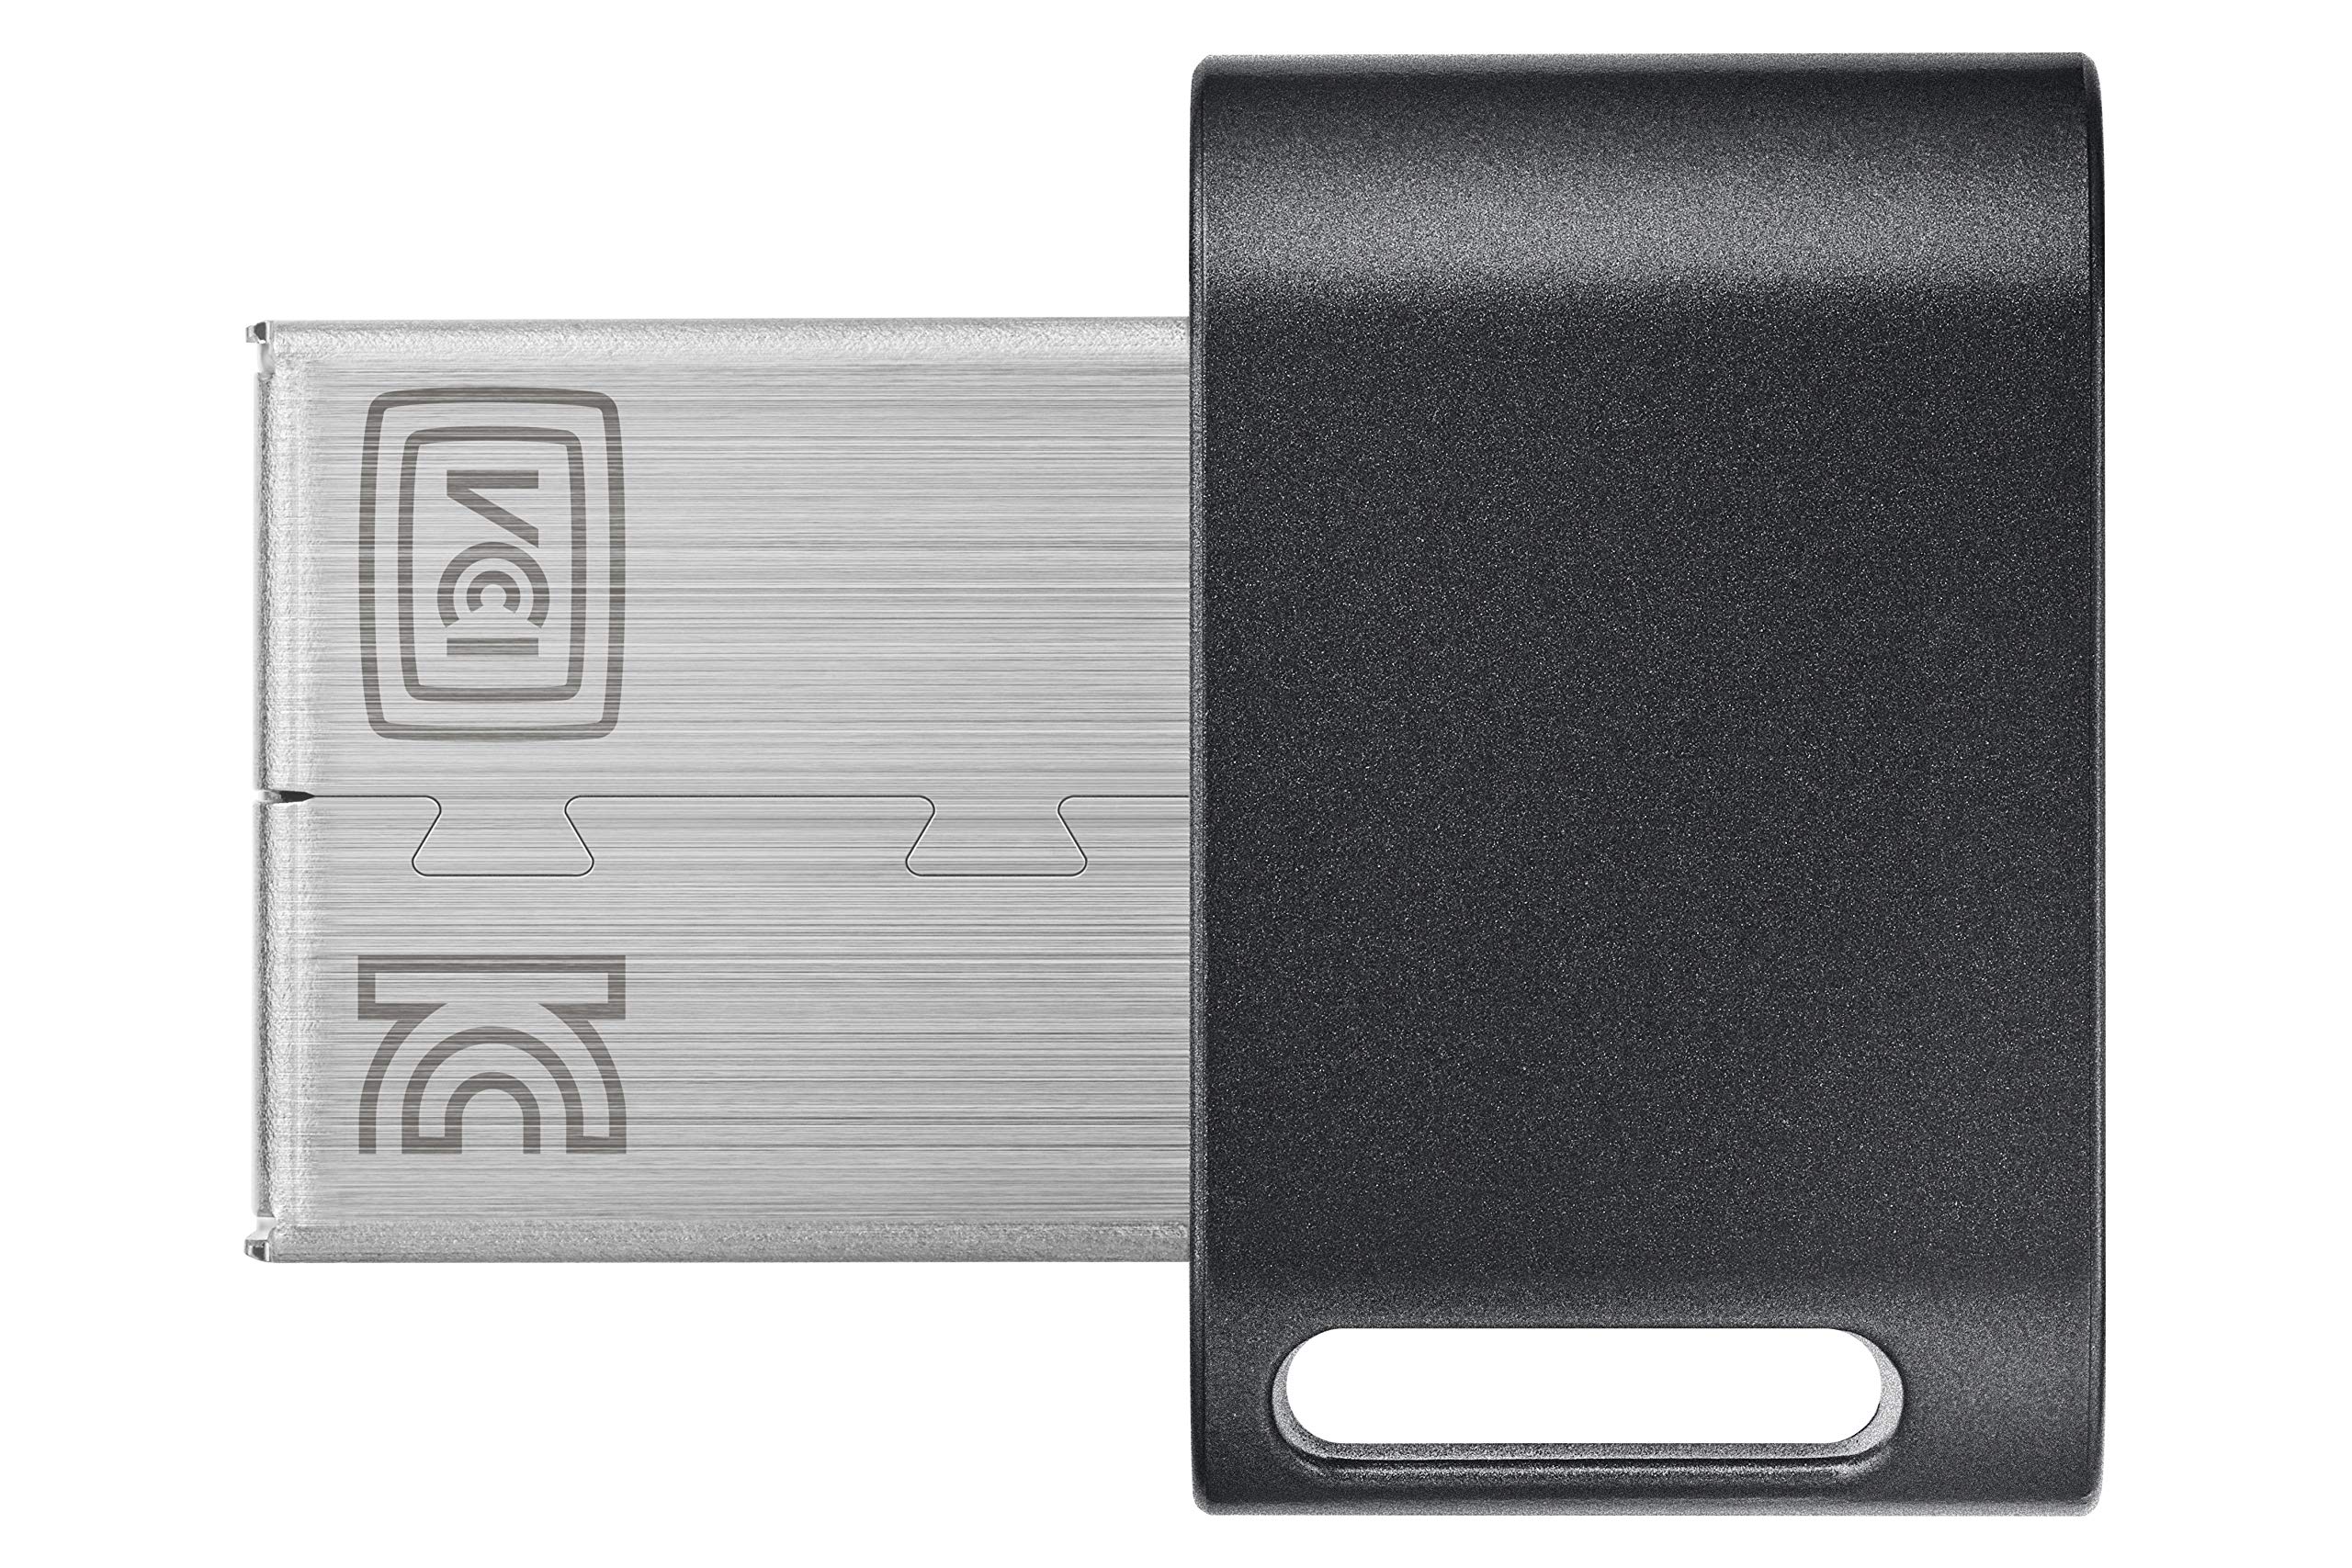 SAMSUNG MUF-64AB/AM FIT Plus 64GB - 300MB/s USB 3.1 Flash Drive, Black/Sliver